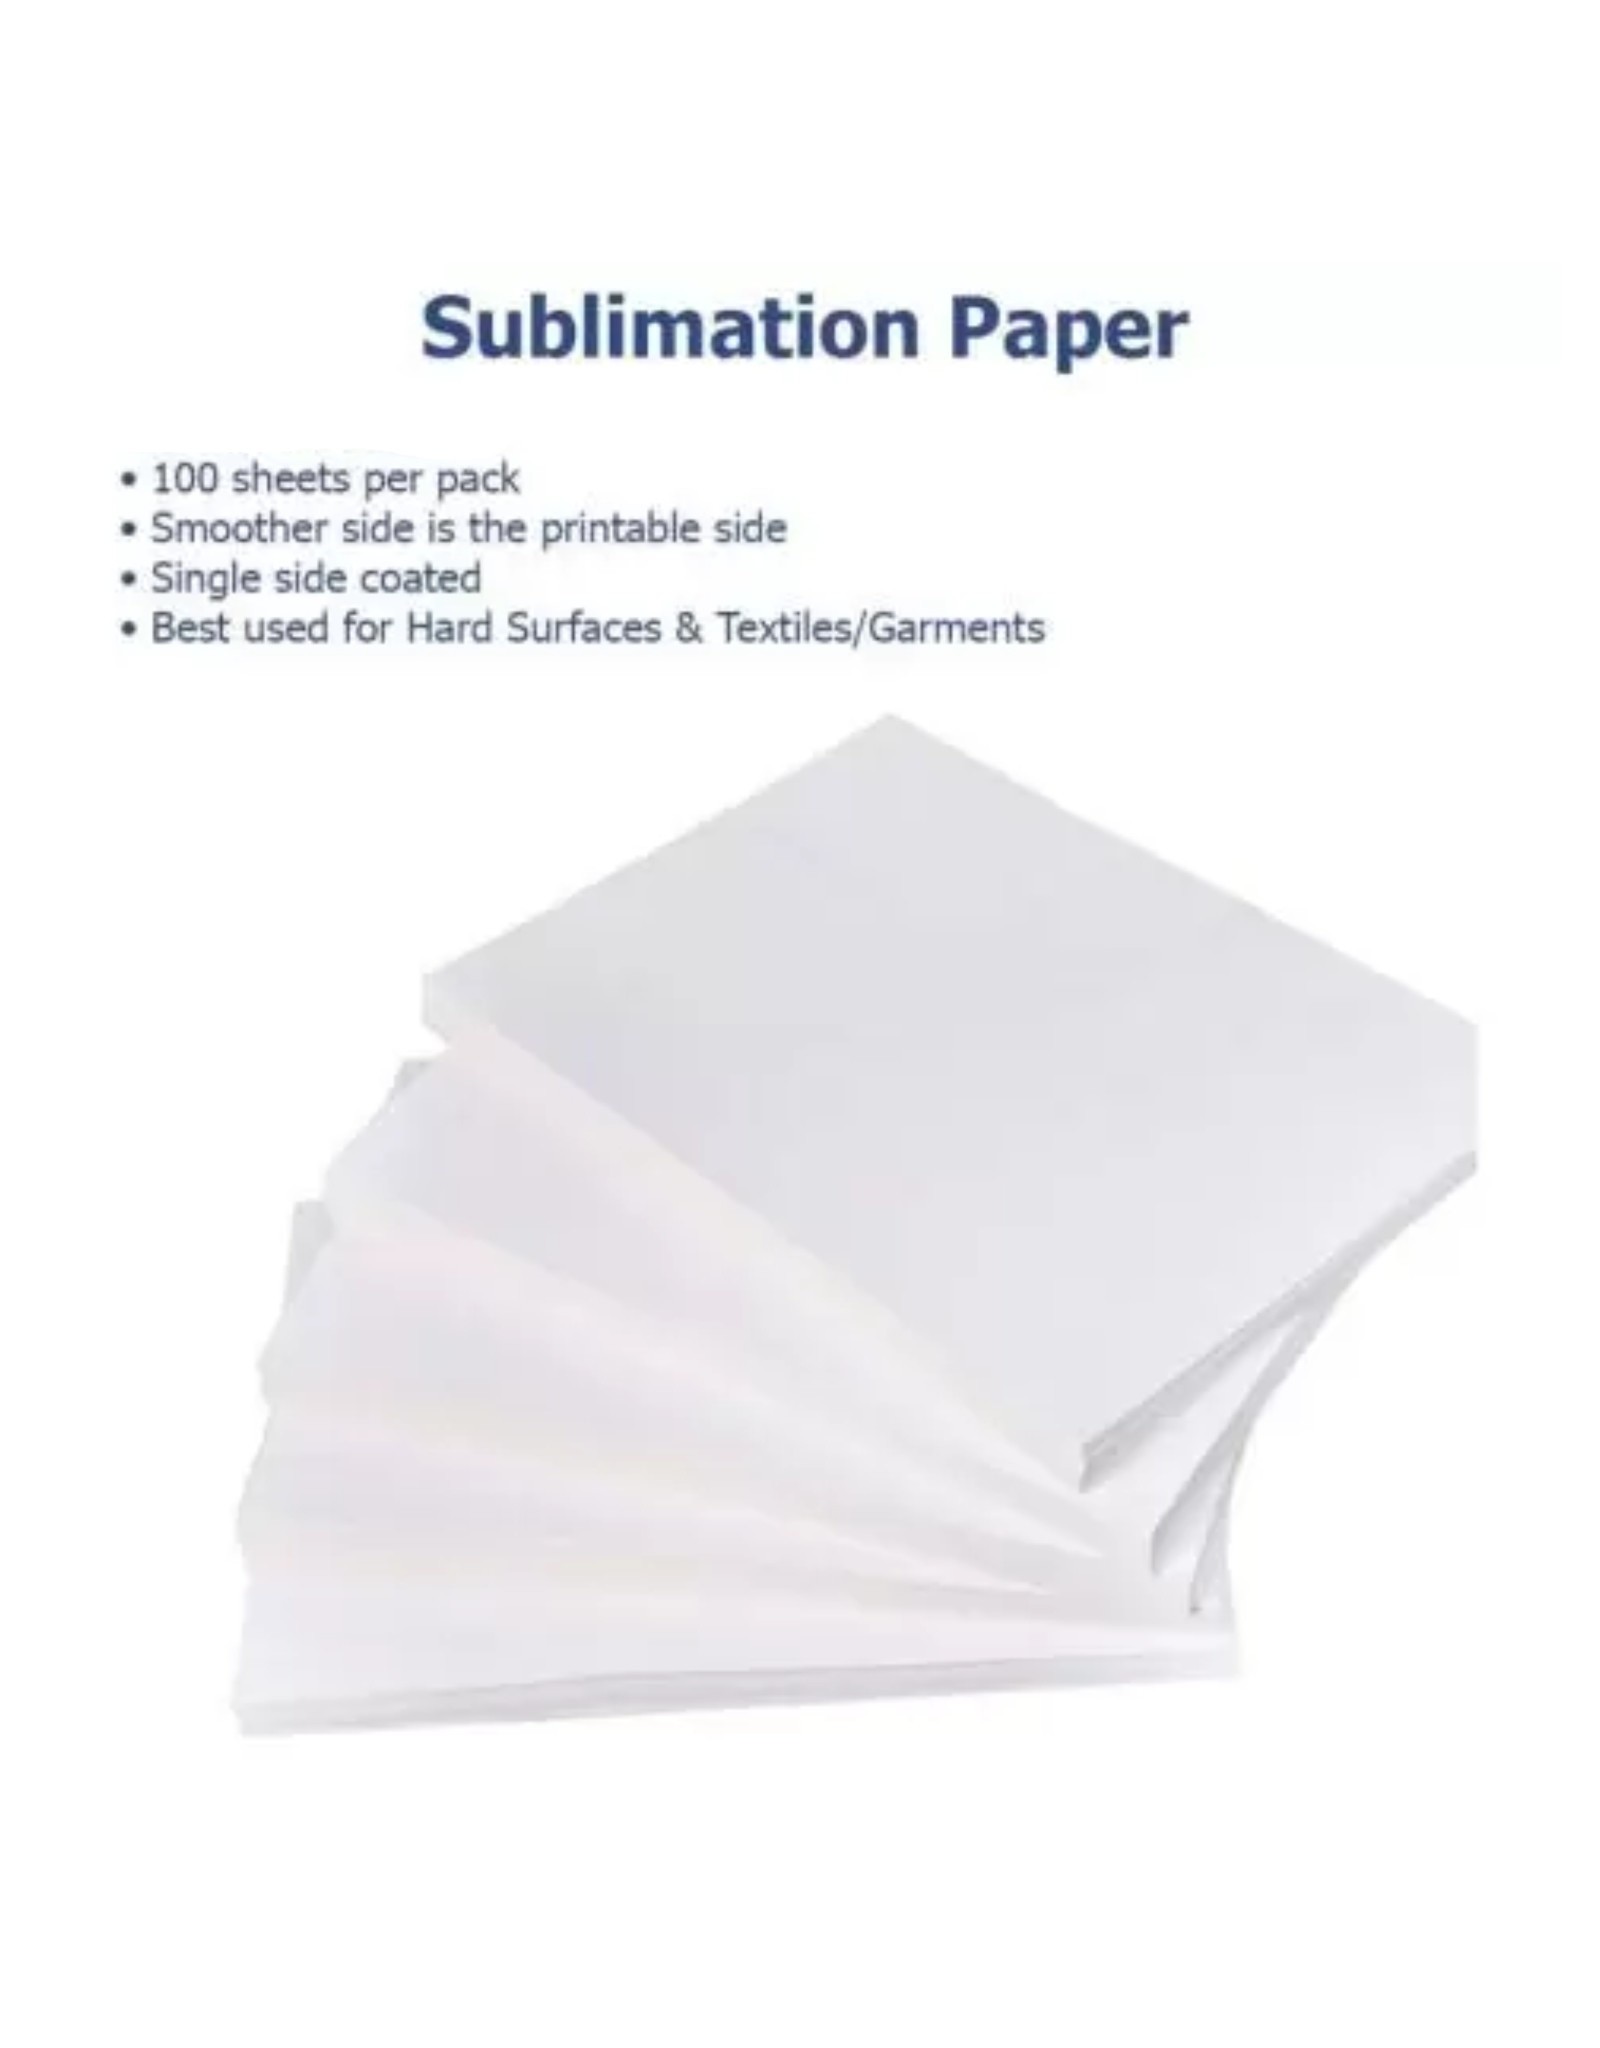 SUBLIMATION PAPER-100 PK. 8.5X11